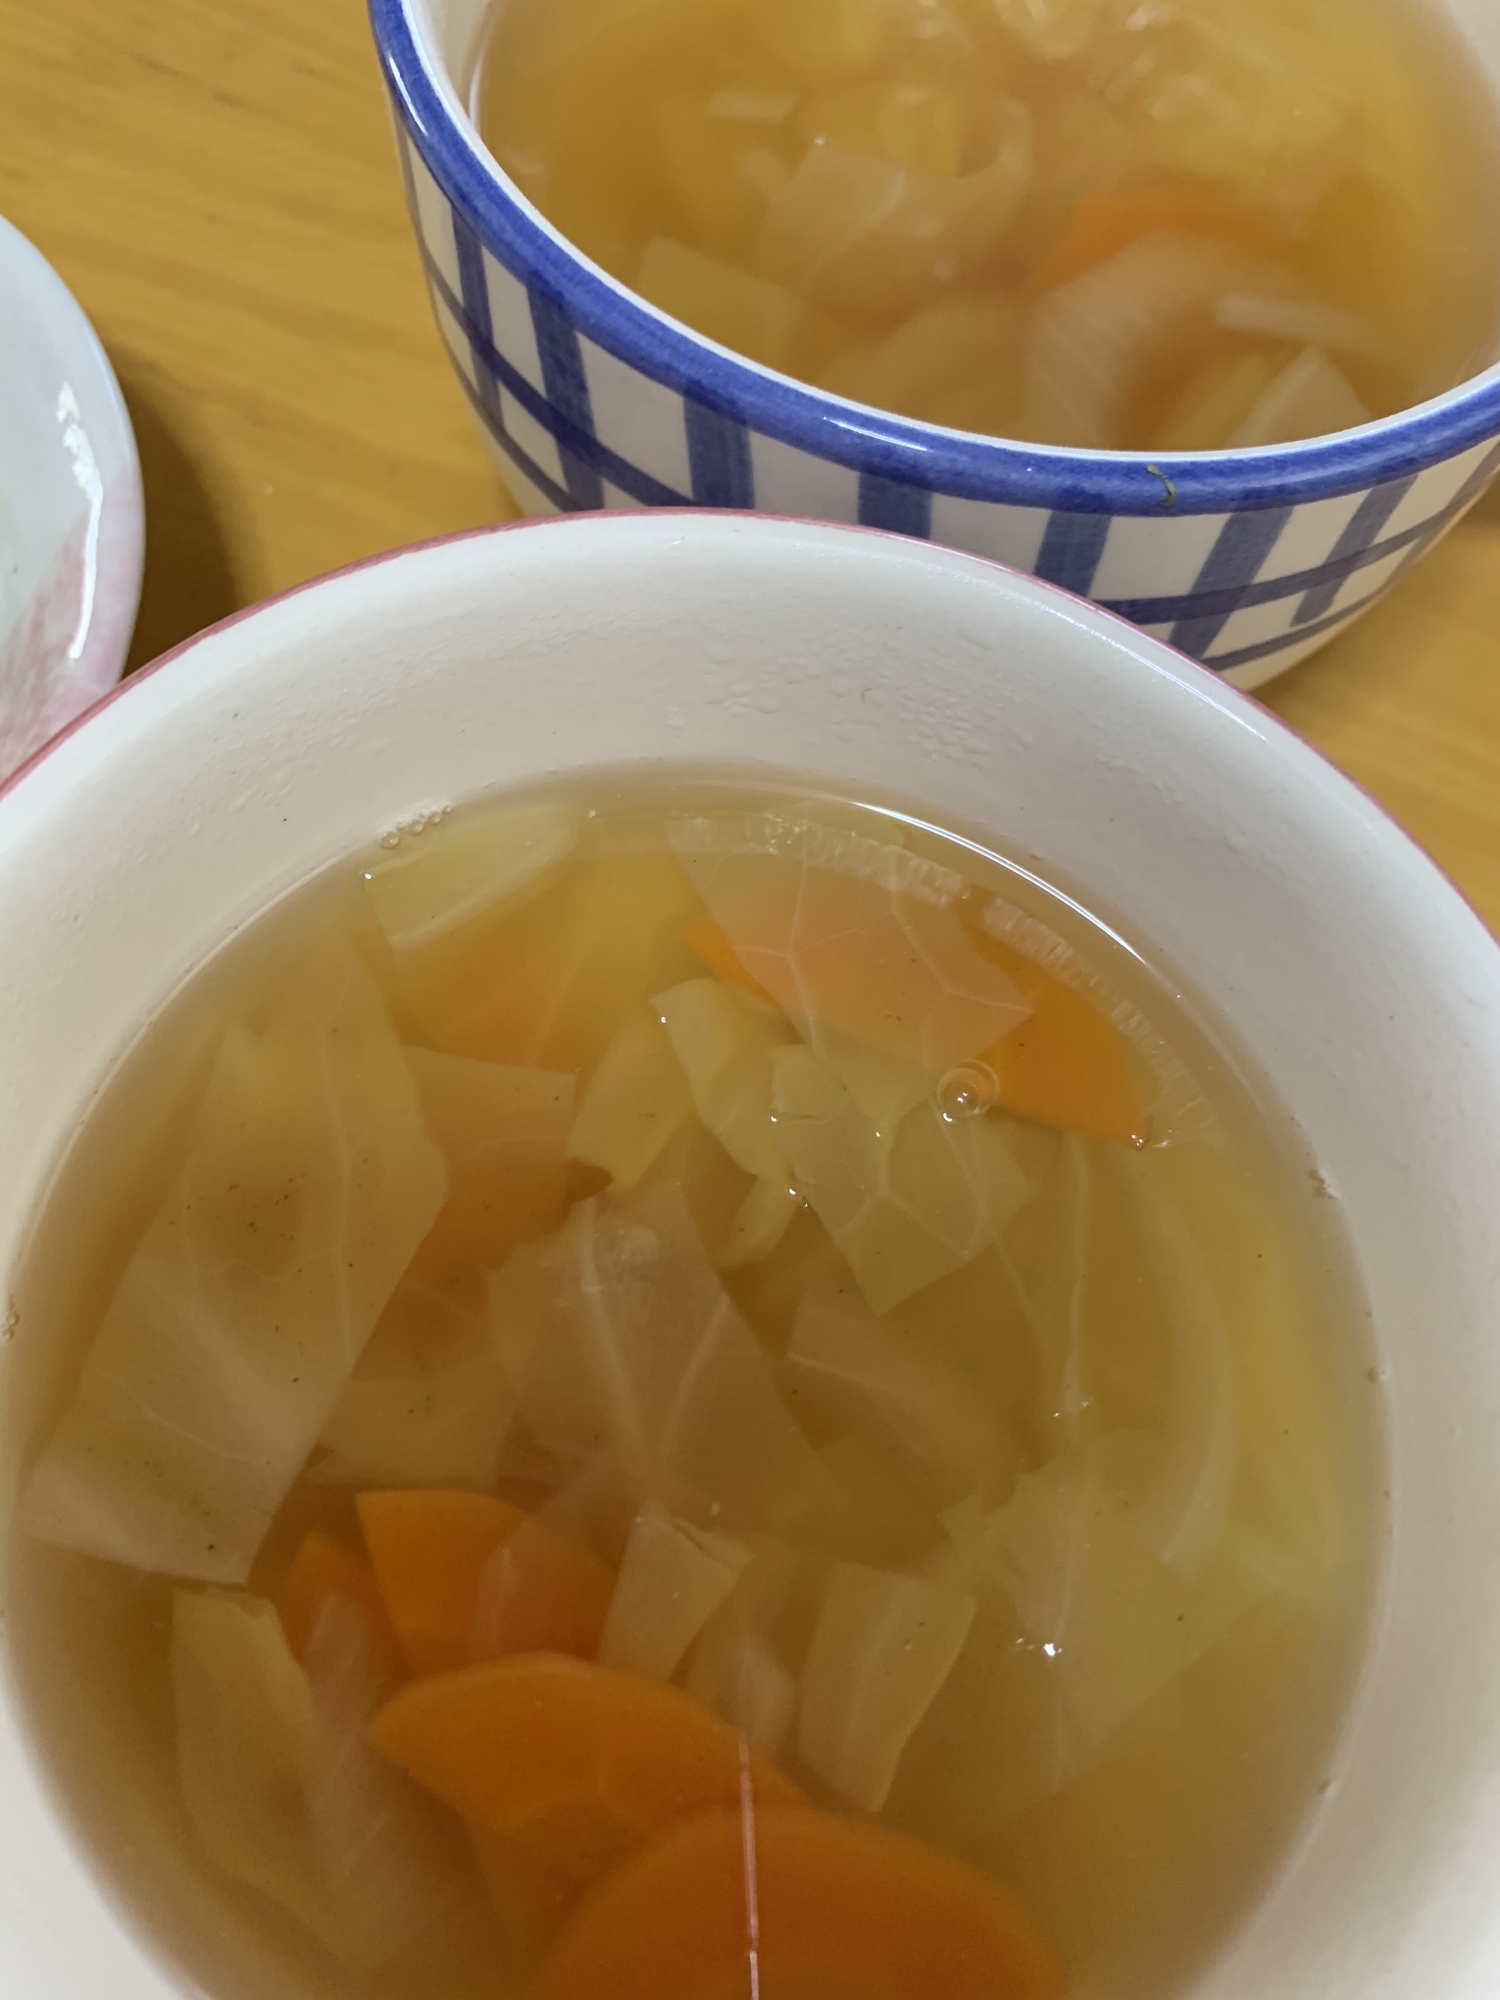 キャベツ人参玉葱の簡単スープ